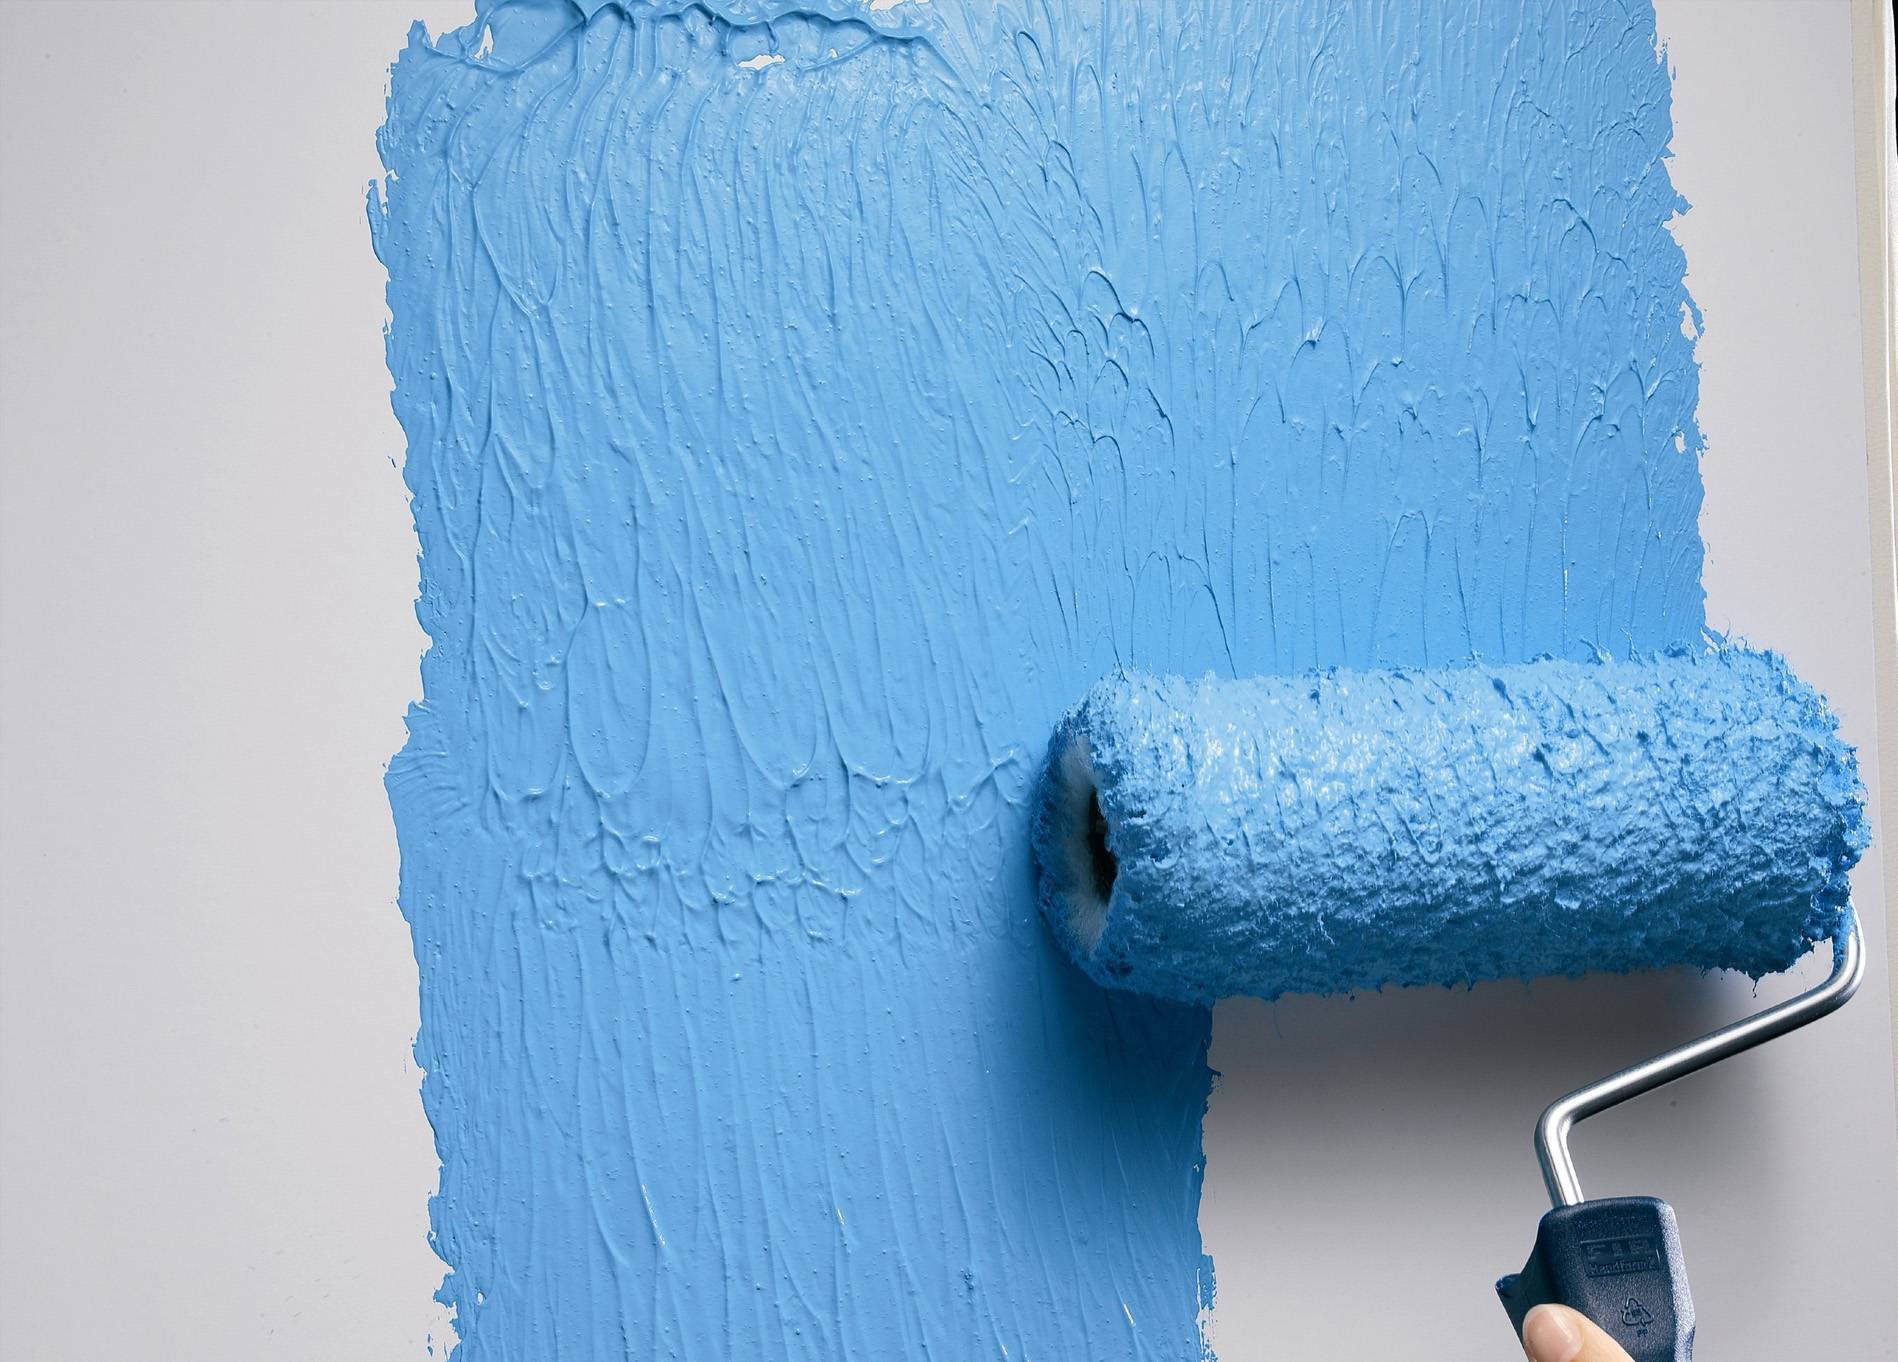 Подготовка стен под покраску: порядок действий, пошаговая инструкция, советы